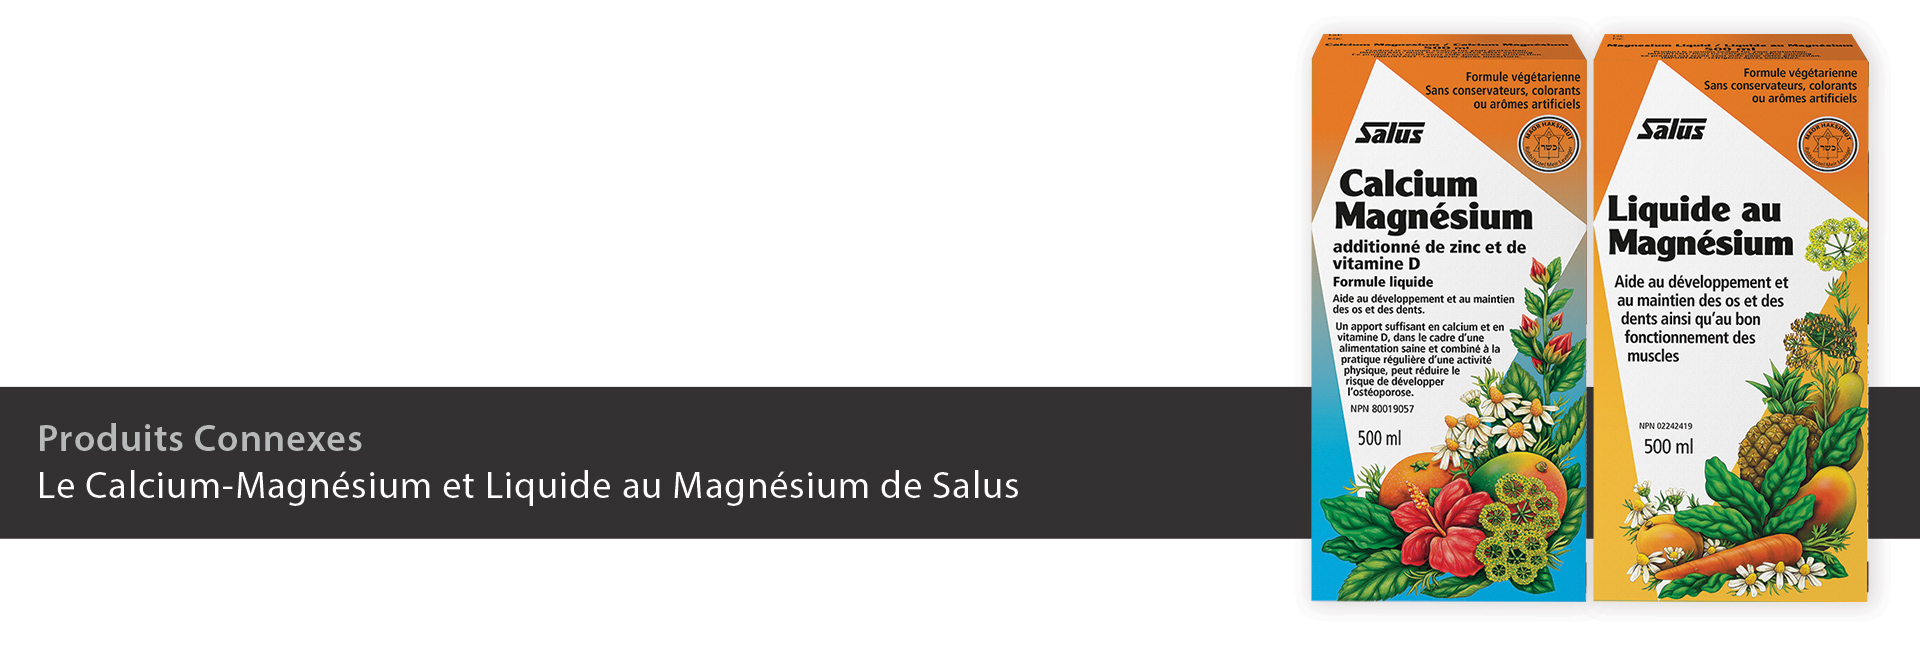 Calcium-Magnésium et Manésium liquide de Salus